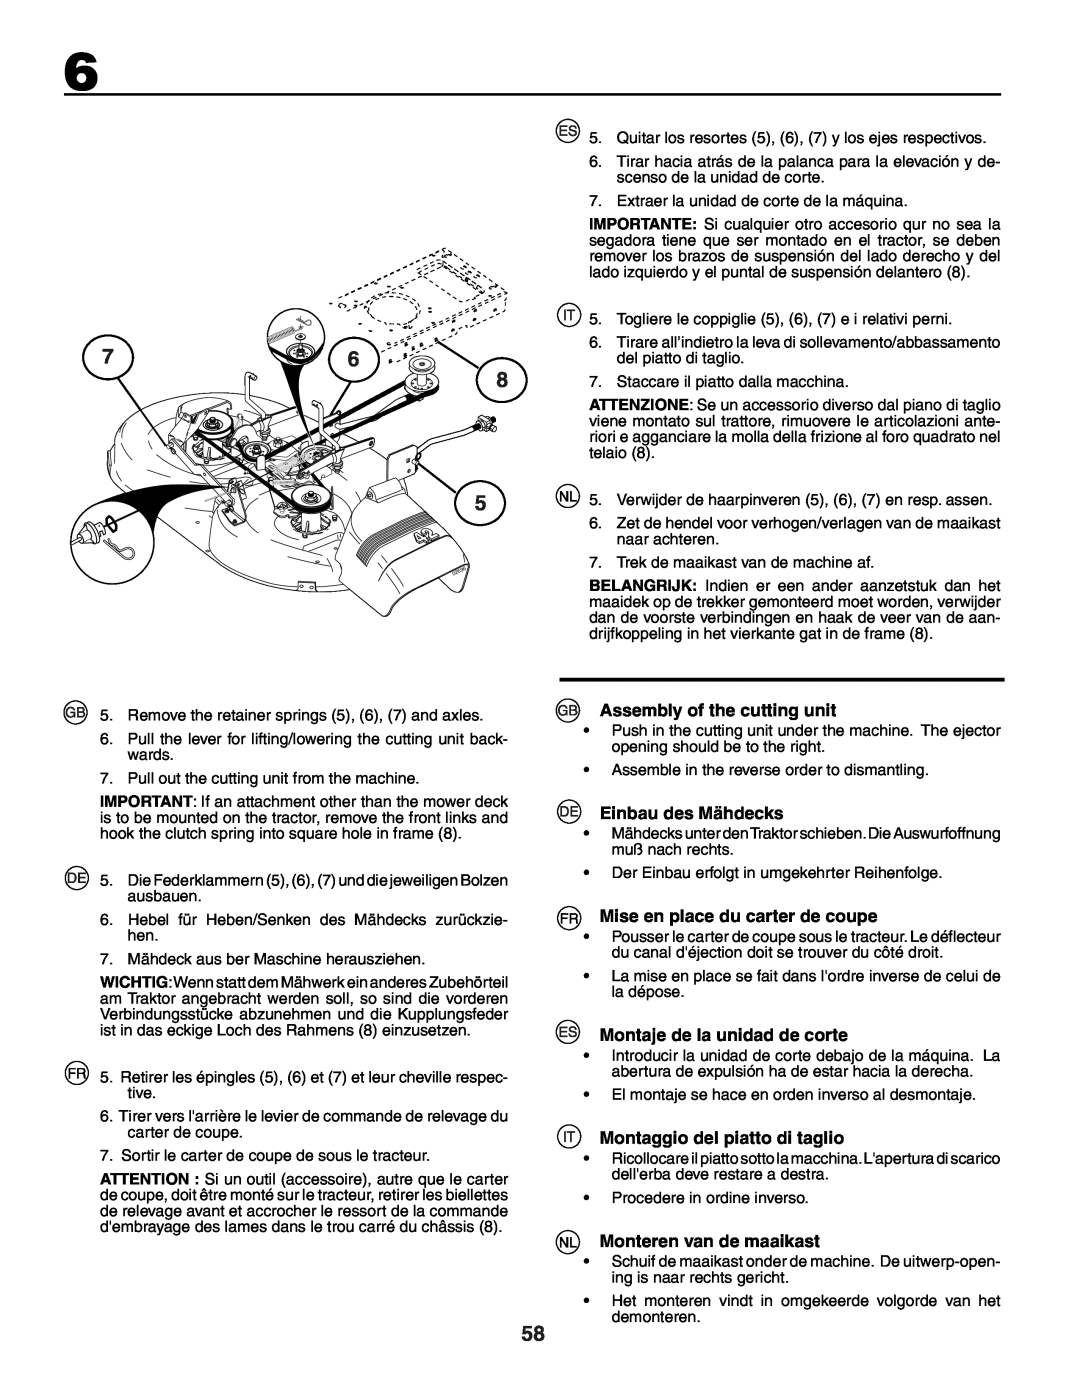 Husqvarna YTH150XP instruction manual Assembly of the cutting unit, Einbau des Mähdecks, Mise en place du carter de coupe 